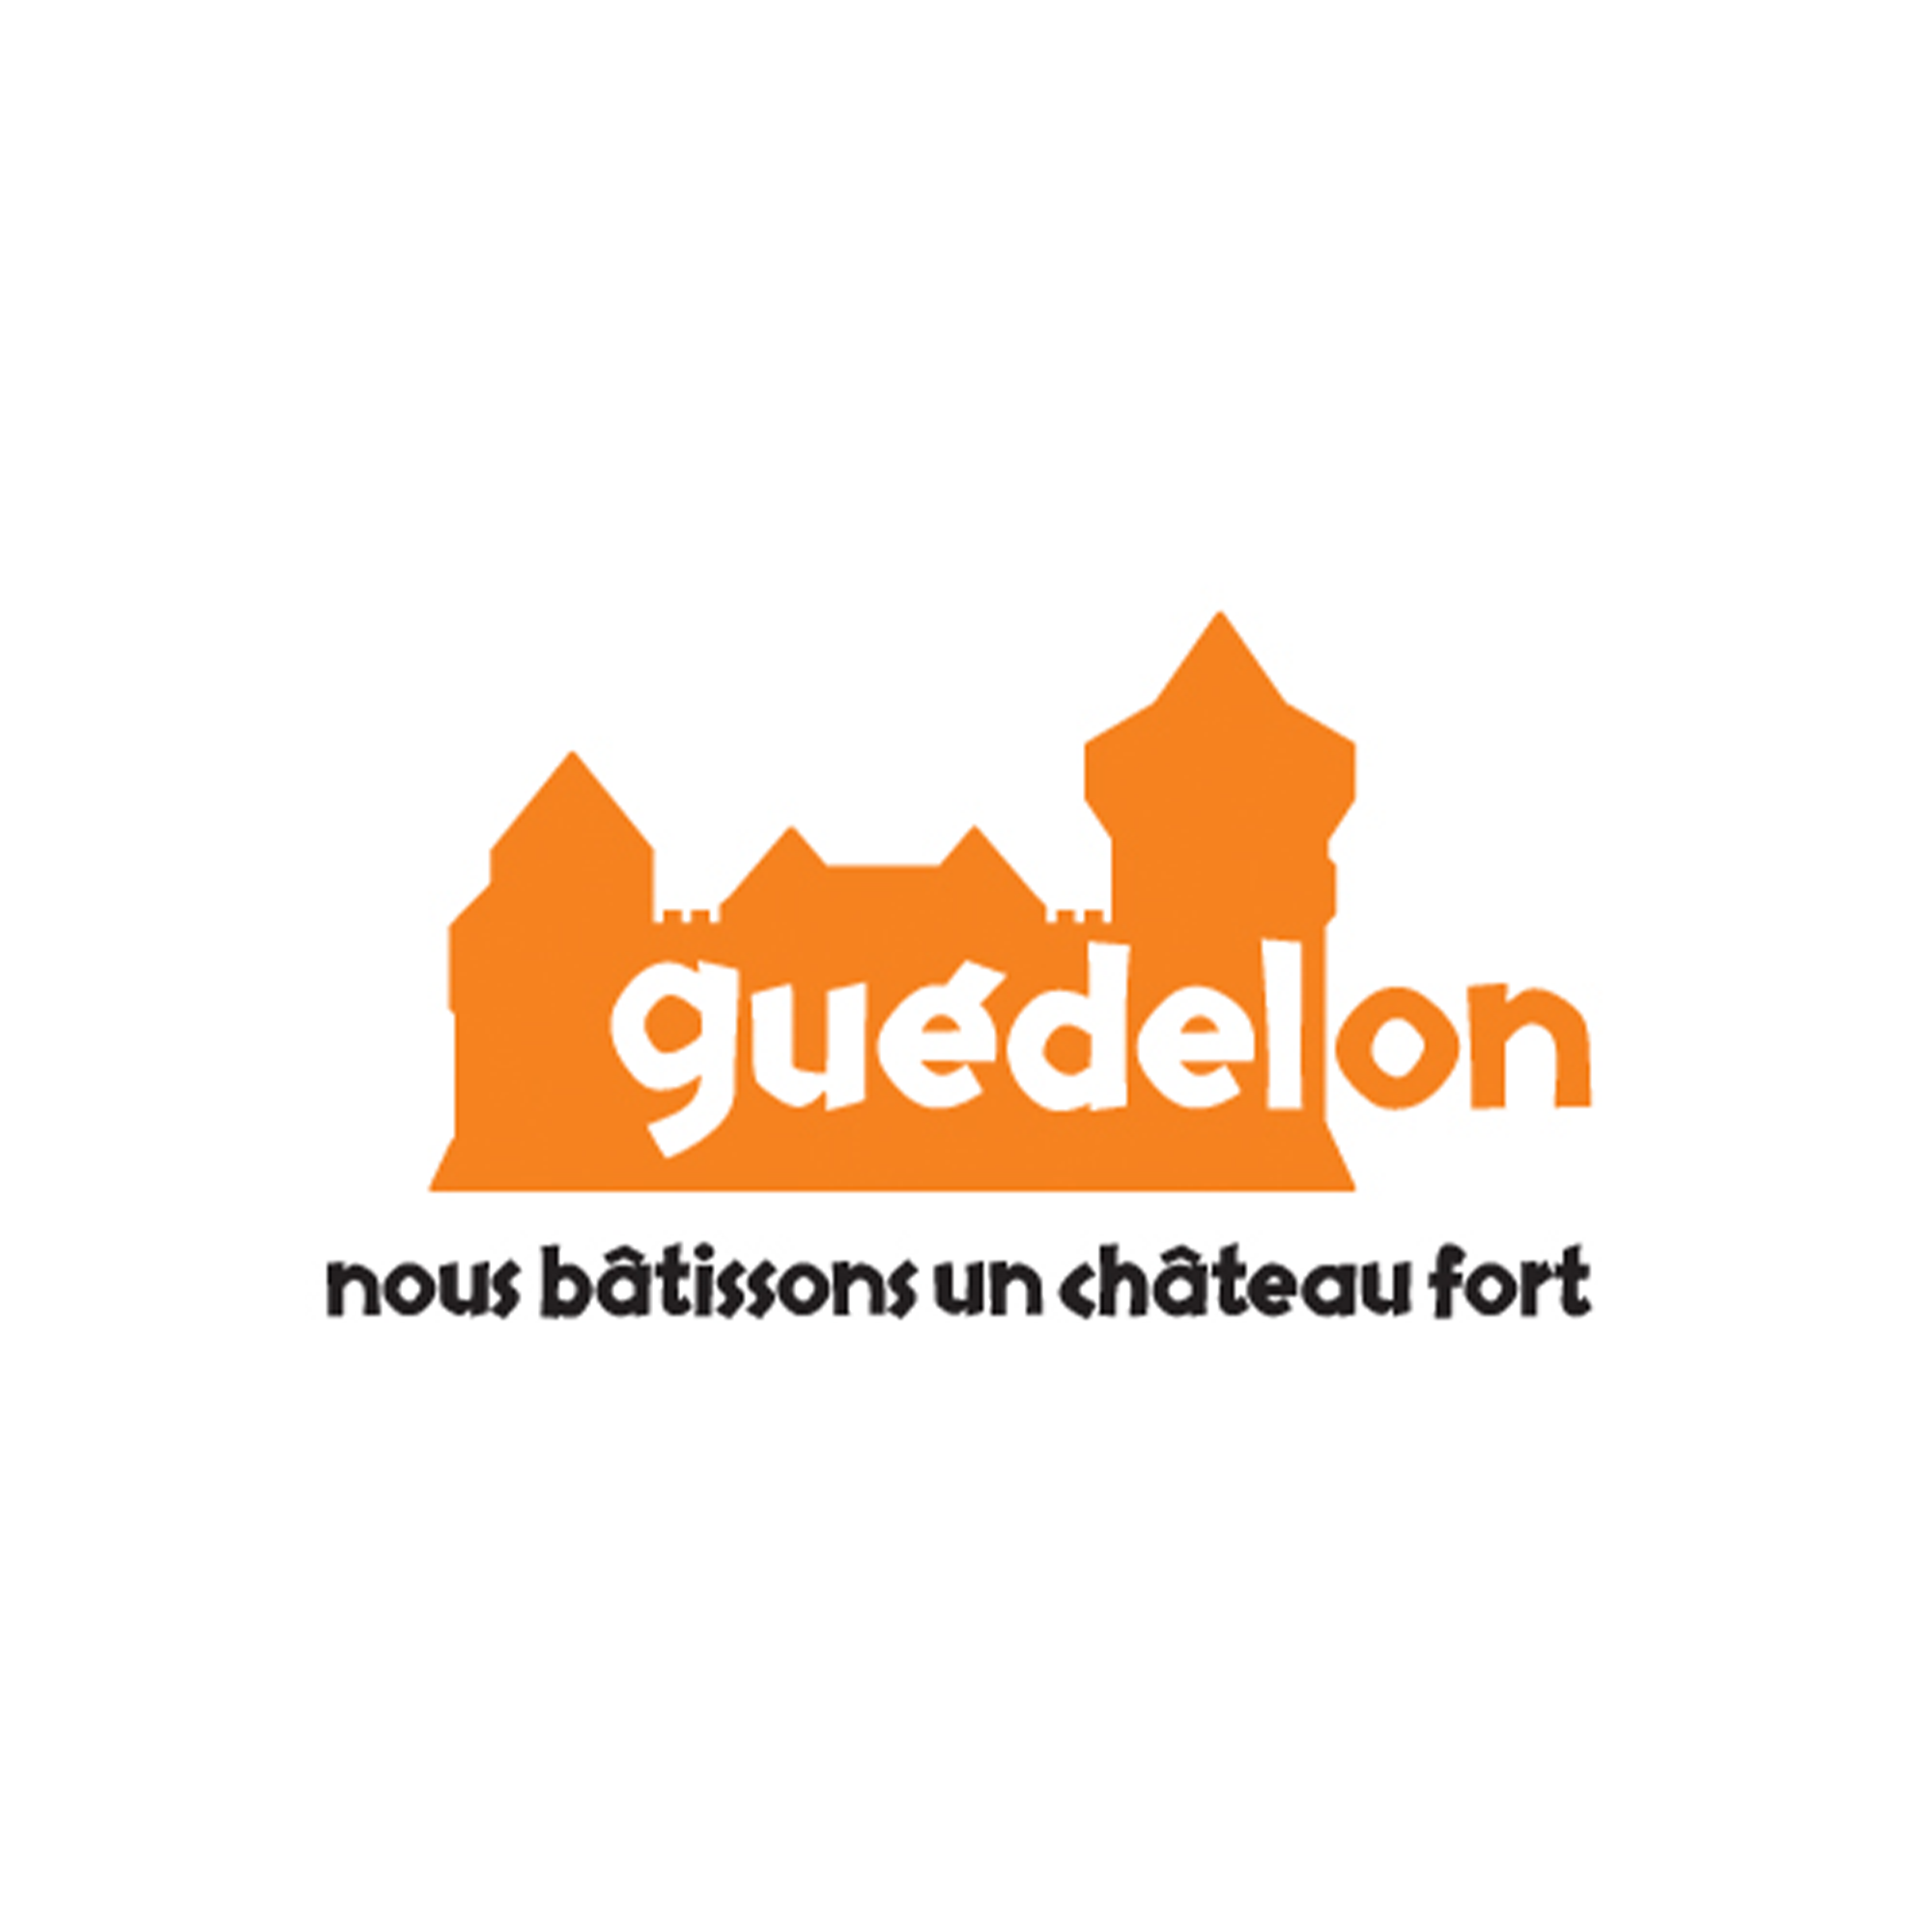 Guedelon